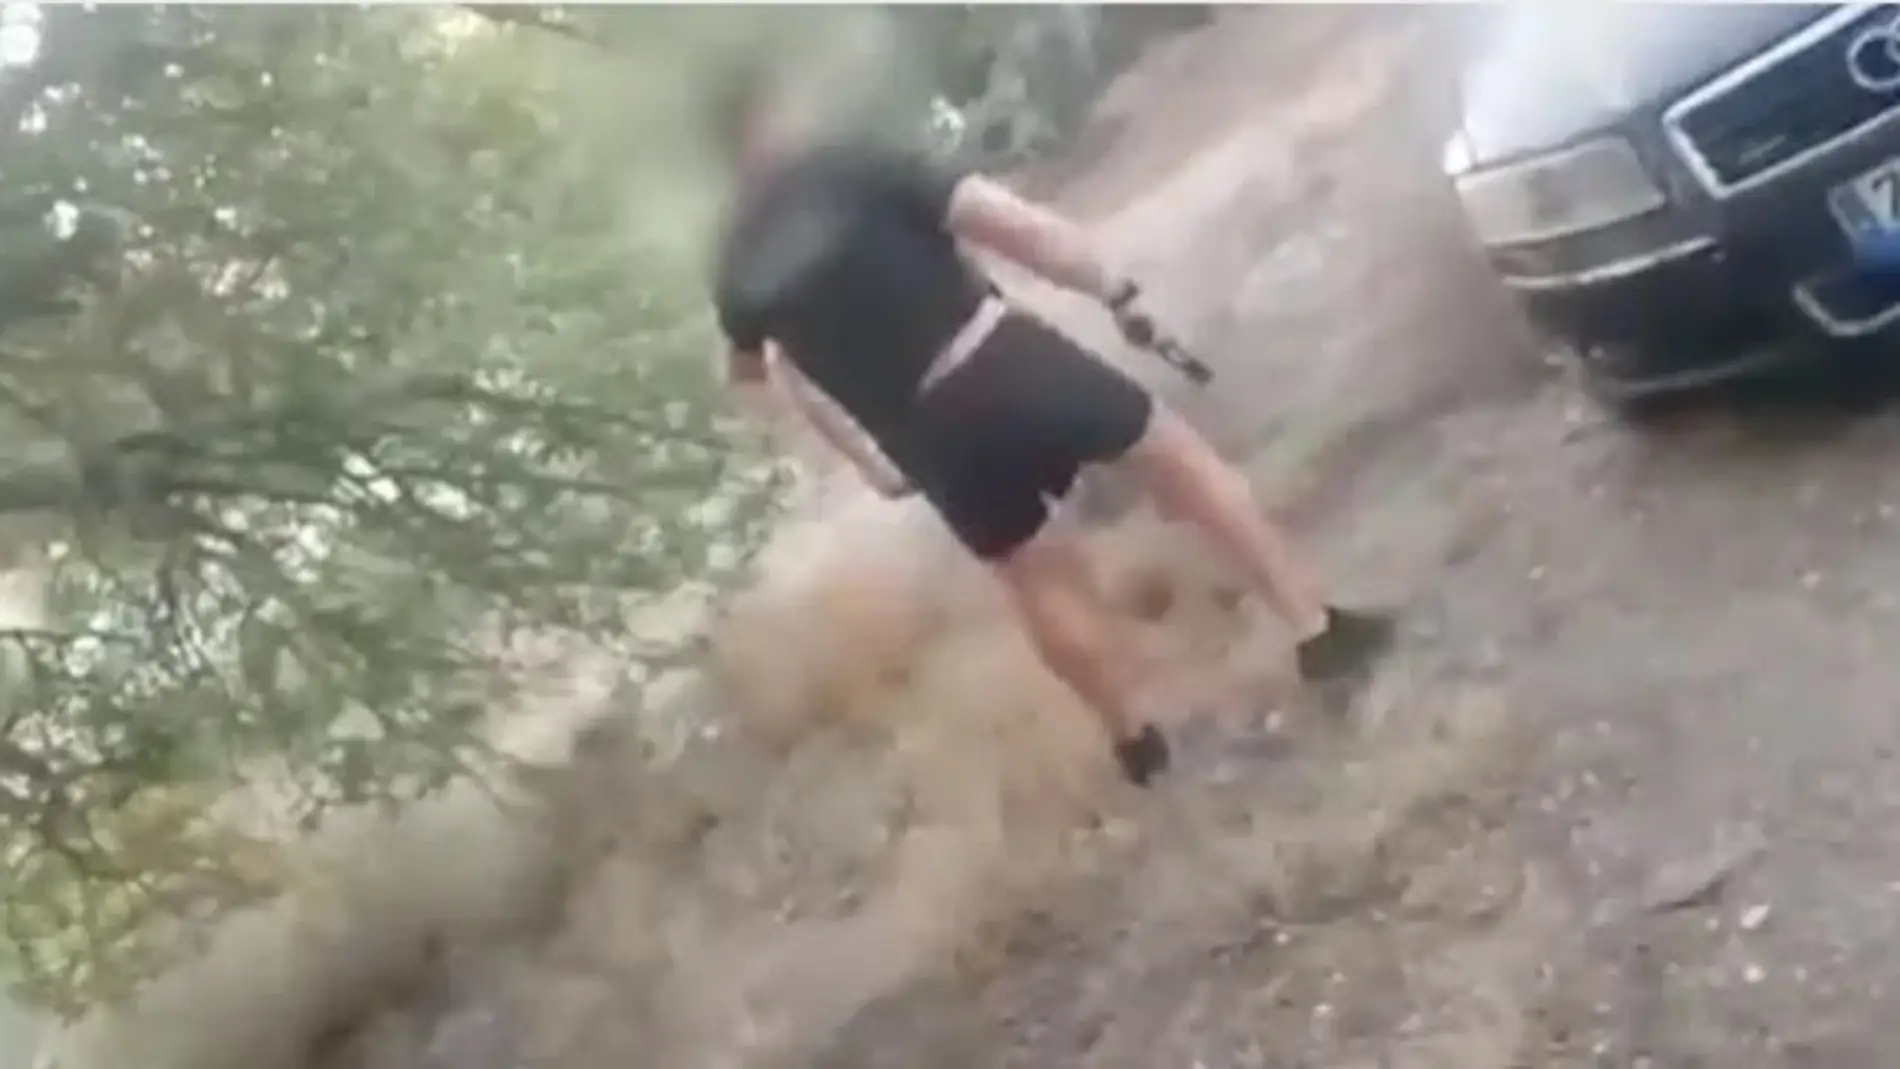 Captura del vídeo difundido por Espejo Público con el que los okupas denuncian al jefe de policía de Cuevas del Almanzora por amenazas